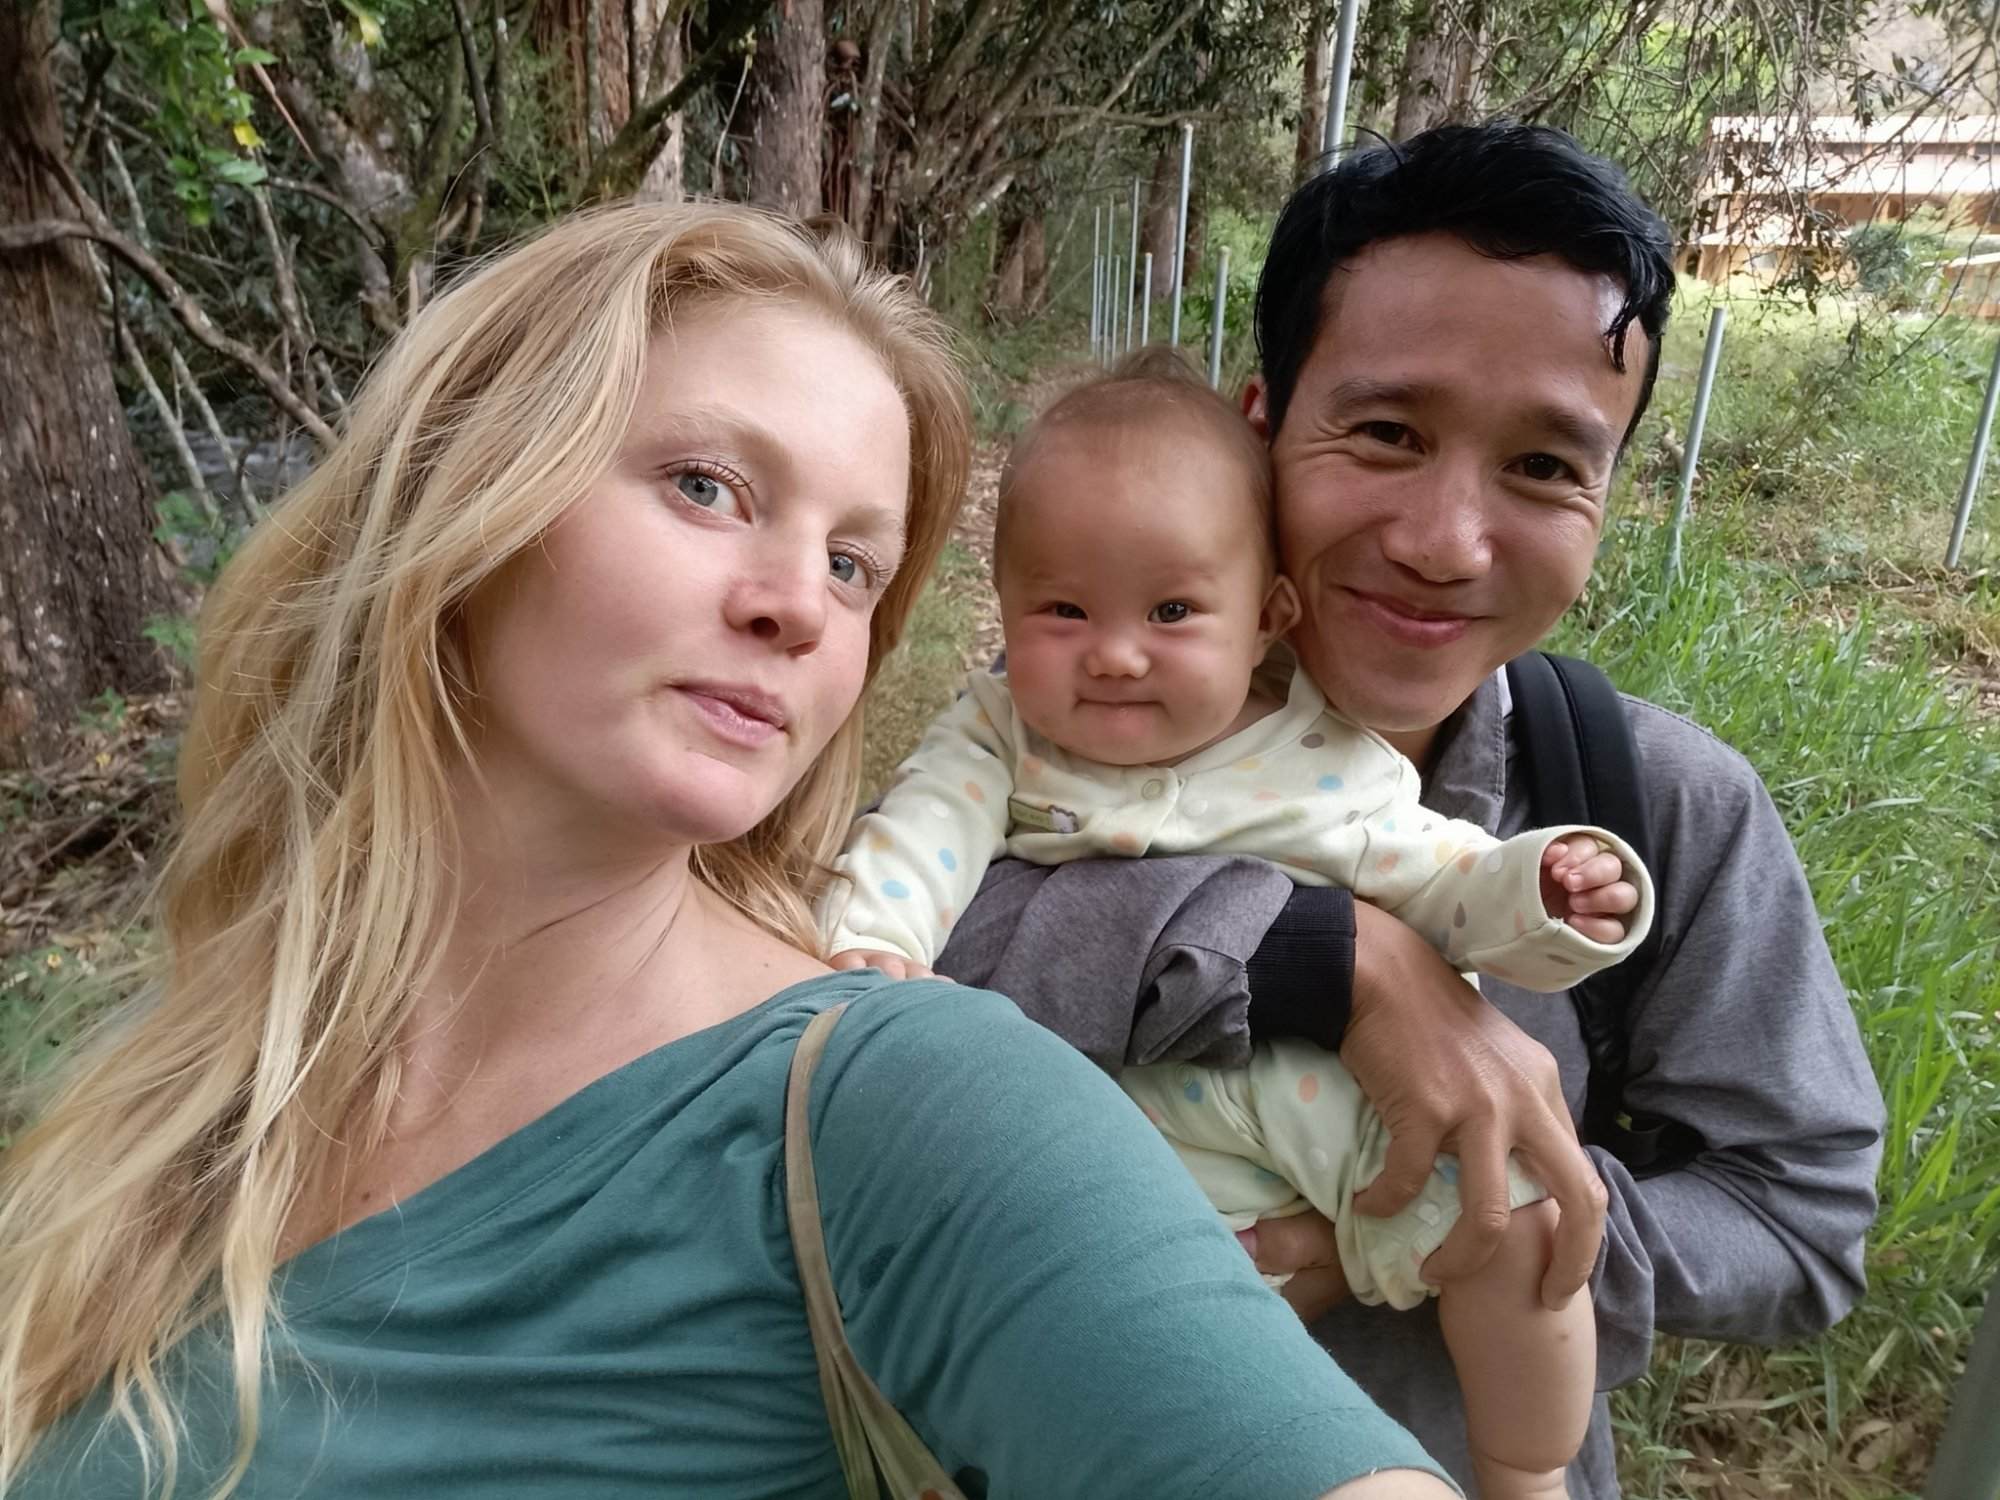 Chàng trai Việt 'cua' bạn gái Mỹ cùng bỏ phố về rừng Nam Mỹ sinh con - ảnh 1